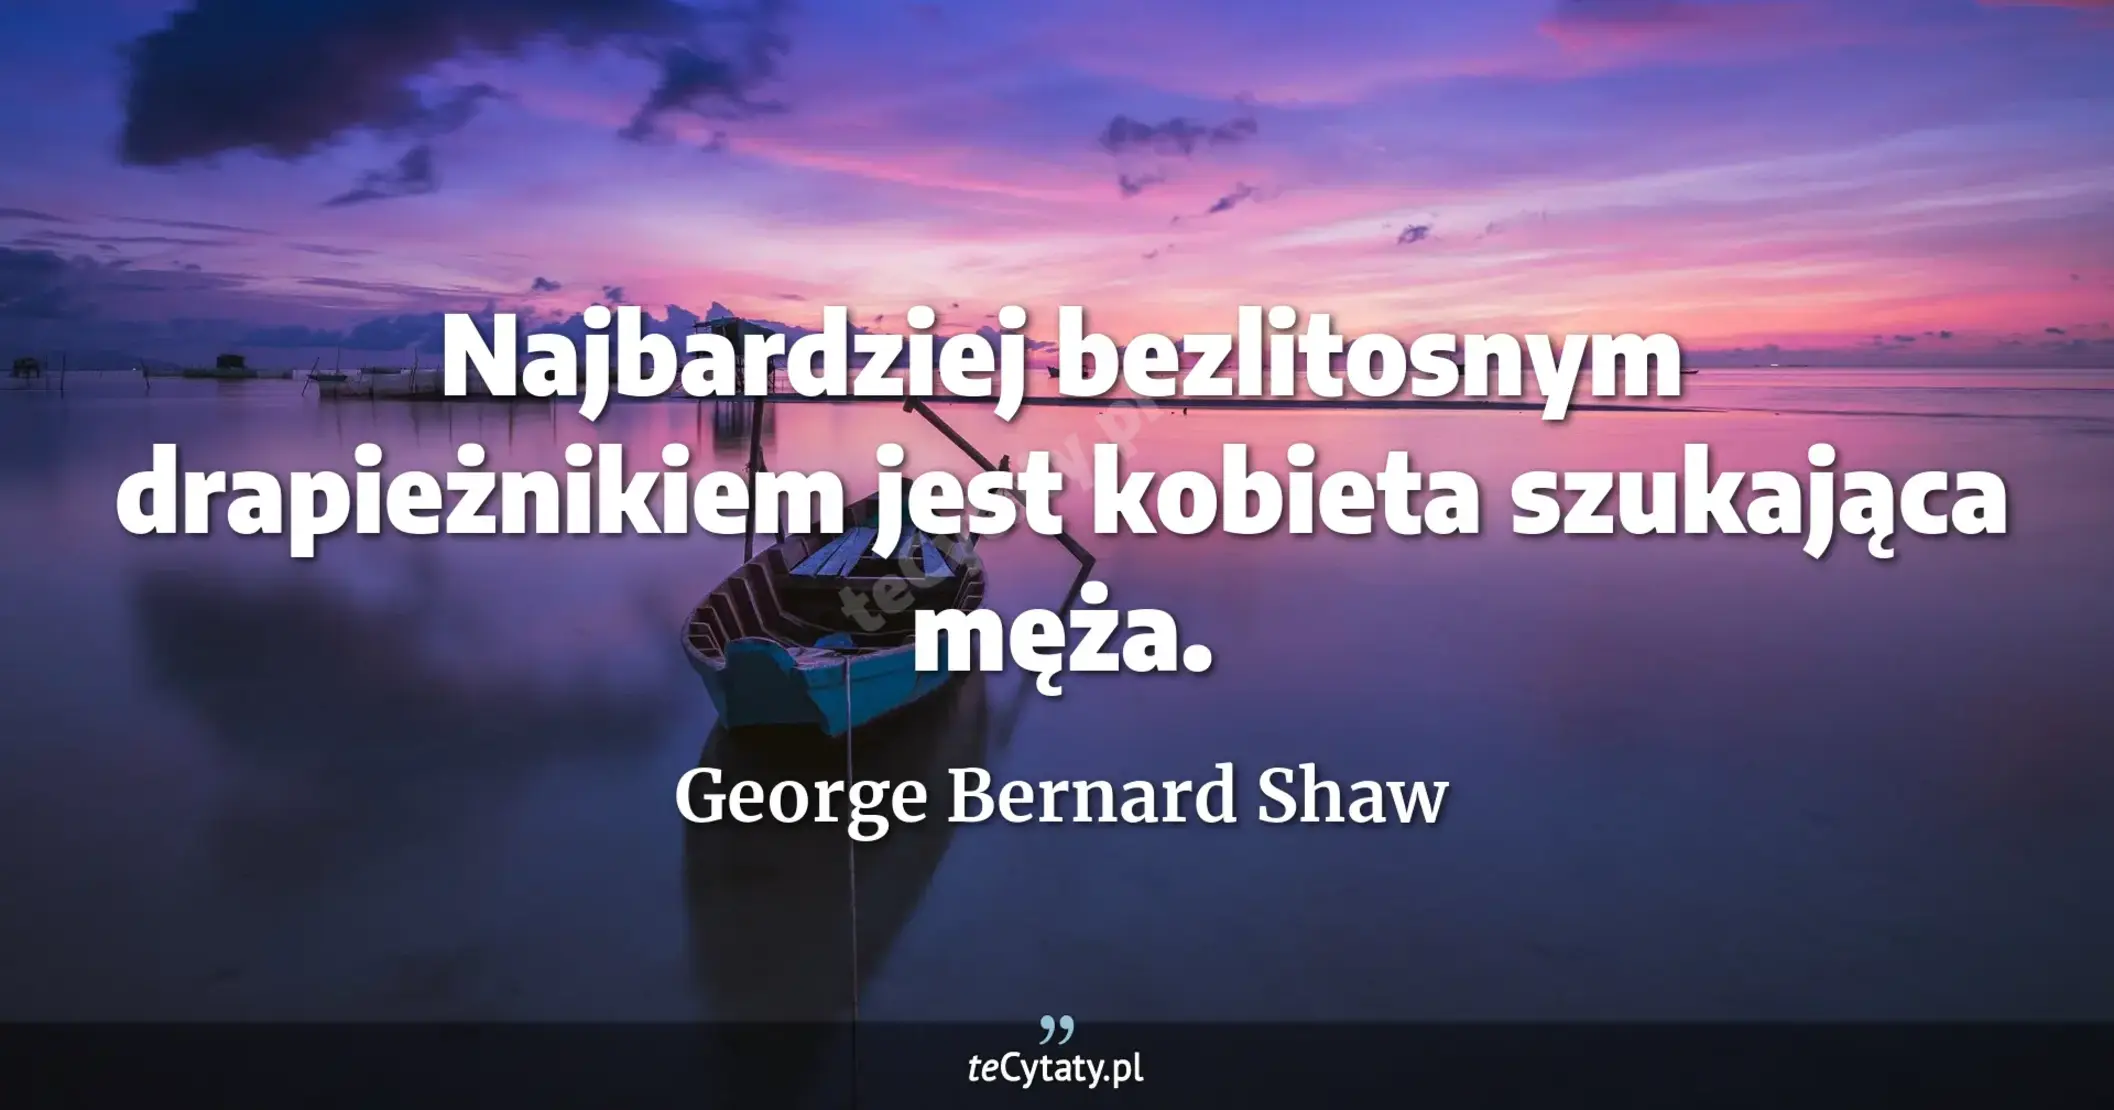 Najbardziej bezlitosnym drapieżnikiem jest kobieta szukająca męża. - George Bernard Shaw